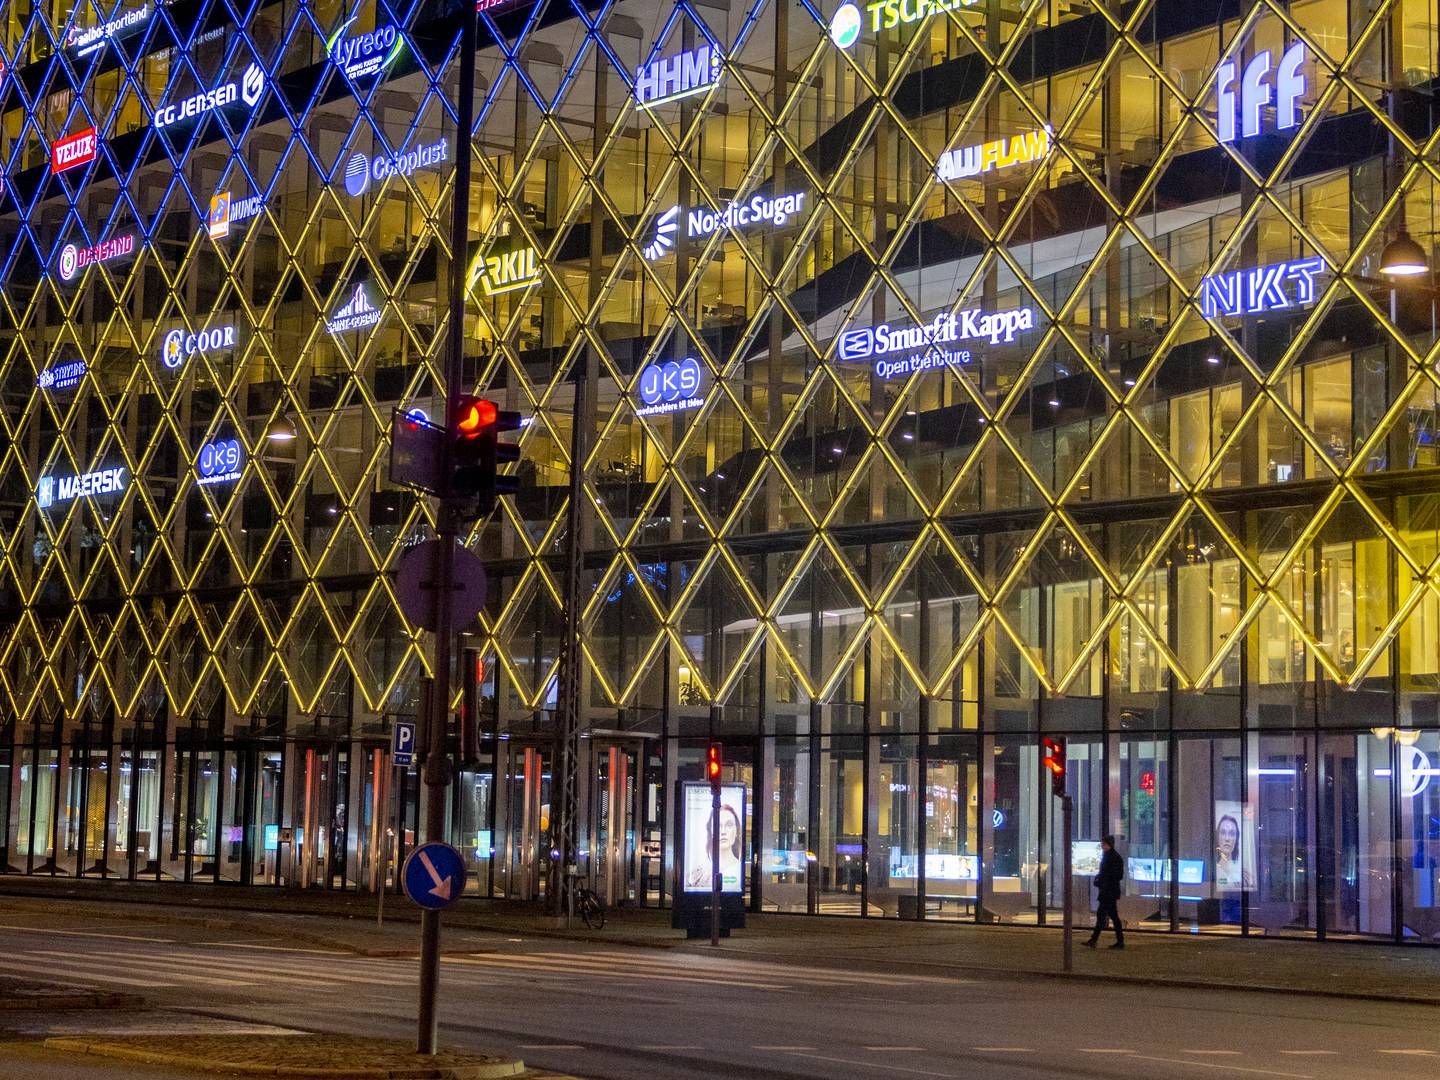 DI's hovedkvarter oplyst af de ukrainske gule og blå farver. | Foto: Mads Nissen